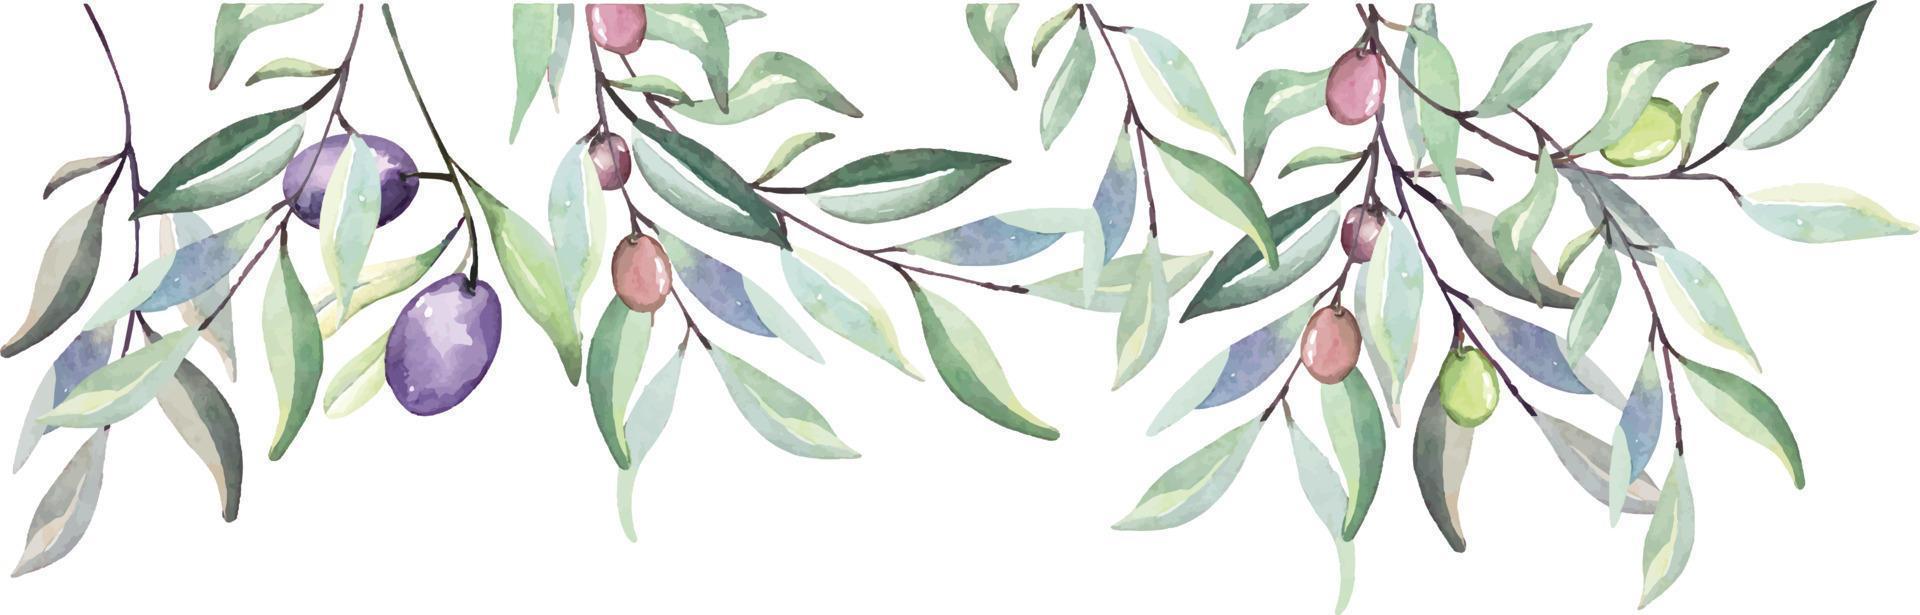 olivkvistar akvarell för att dekorera inbjudningskort naturen i vintage style.botanical trädgård. vektor